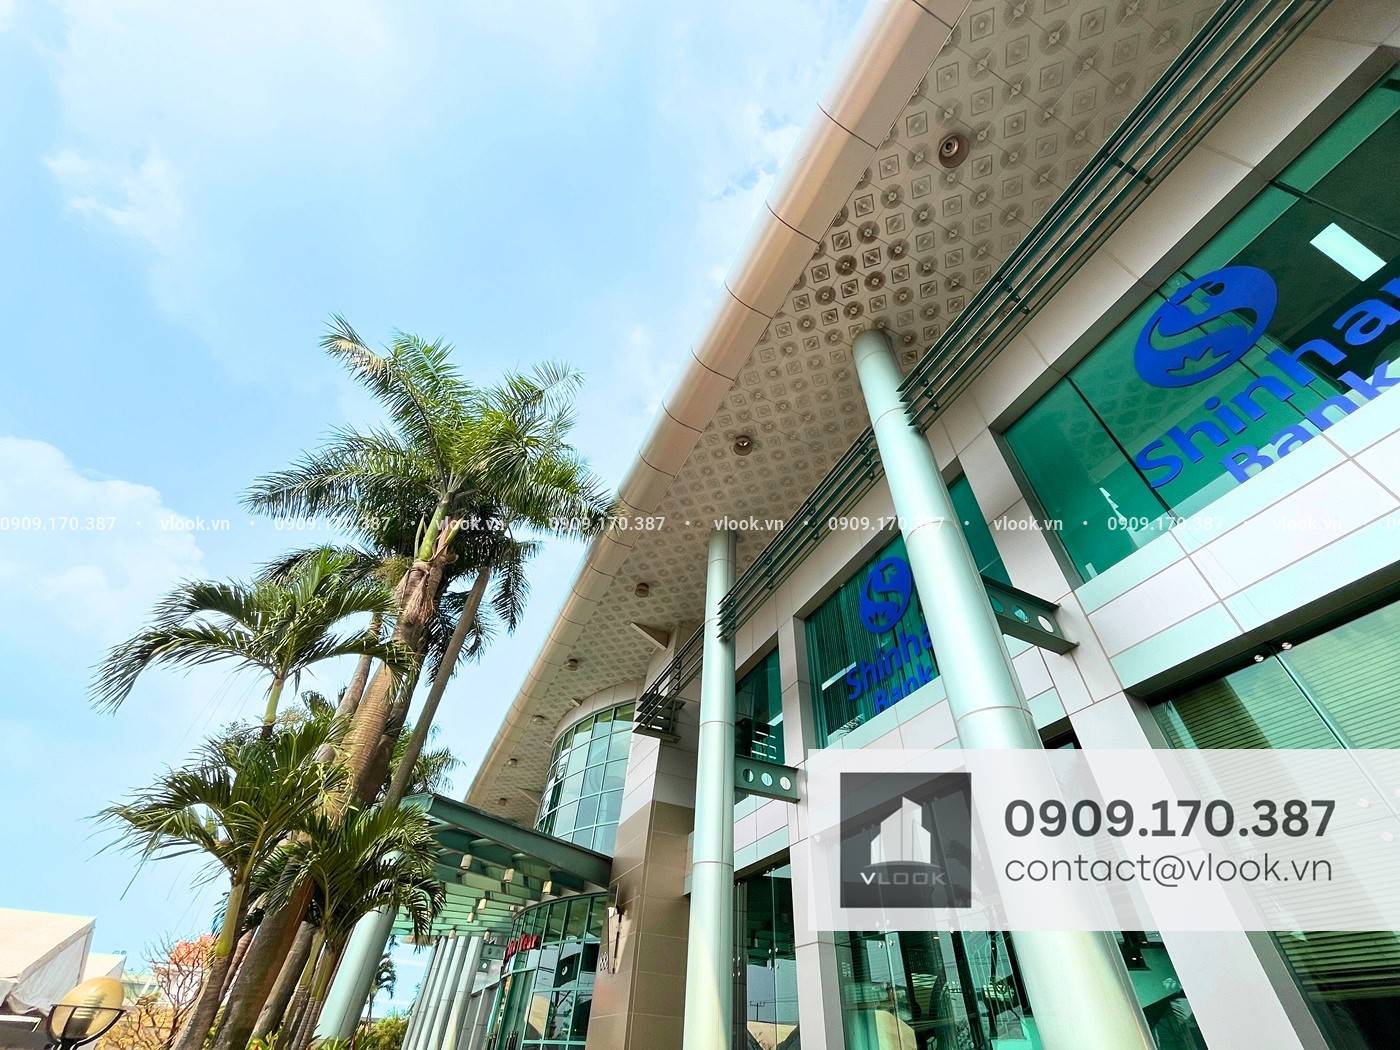 Cao ốc văn phòng cho thuê văn phòng Minh Sáng Plaza, Đại Lộ Bình Dương, Thành phố Thuận An, Bình Dương - vlook.vn